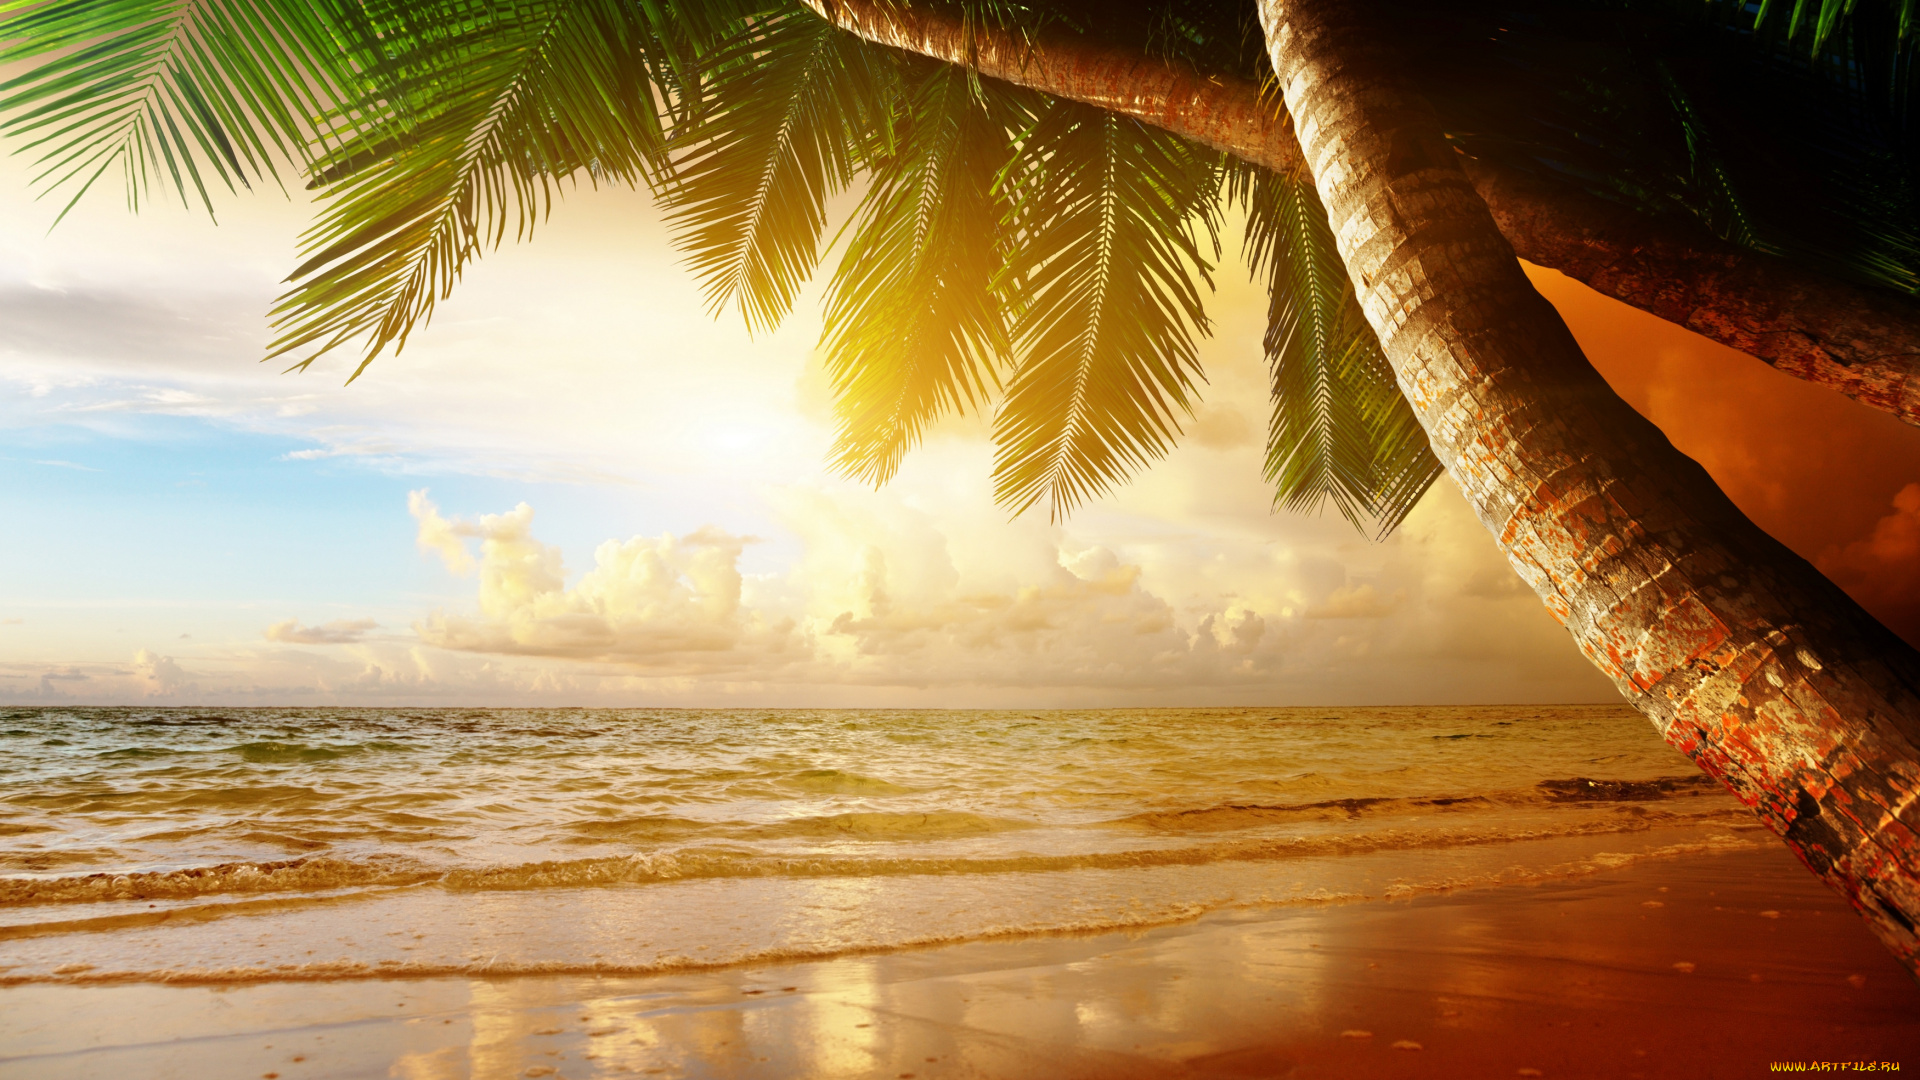 природа, тропики, sunset, sea, ocean, закат, palm, summer, sand, пляж, песок, море, берег, пальмы, coast, paradise, beach, tropical